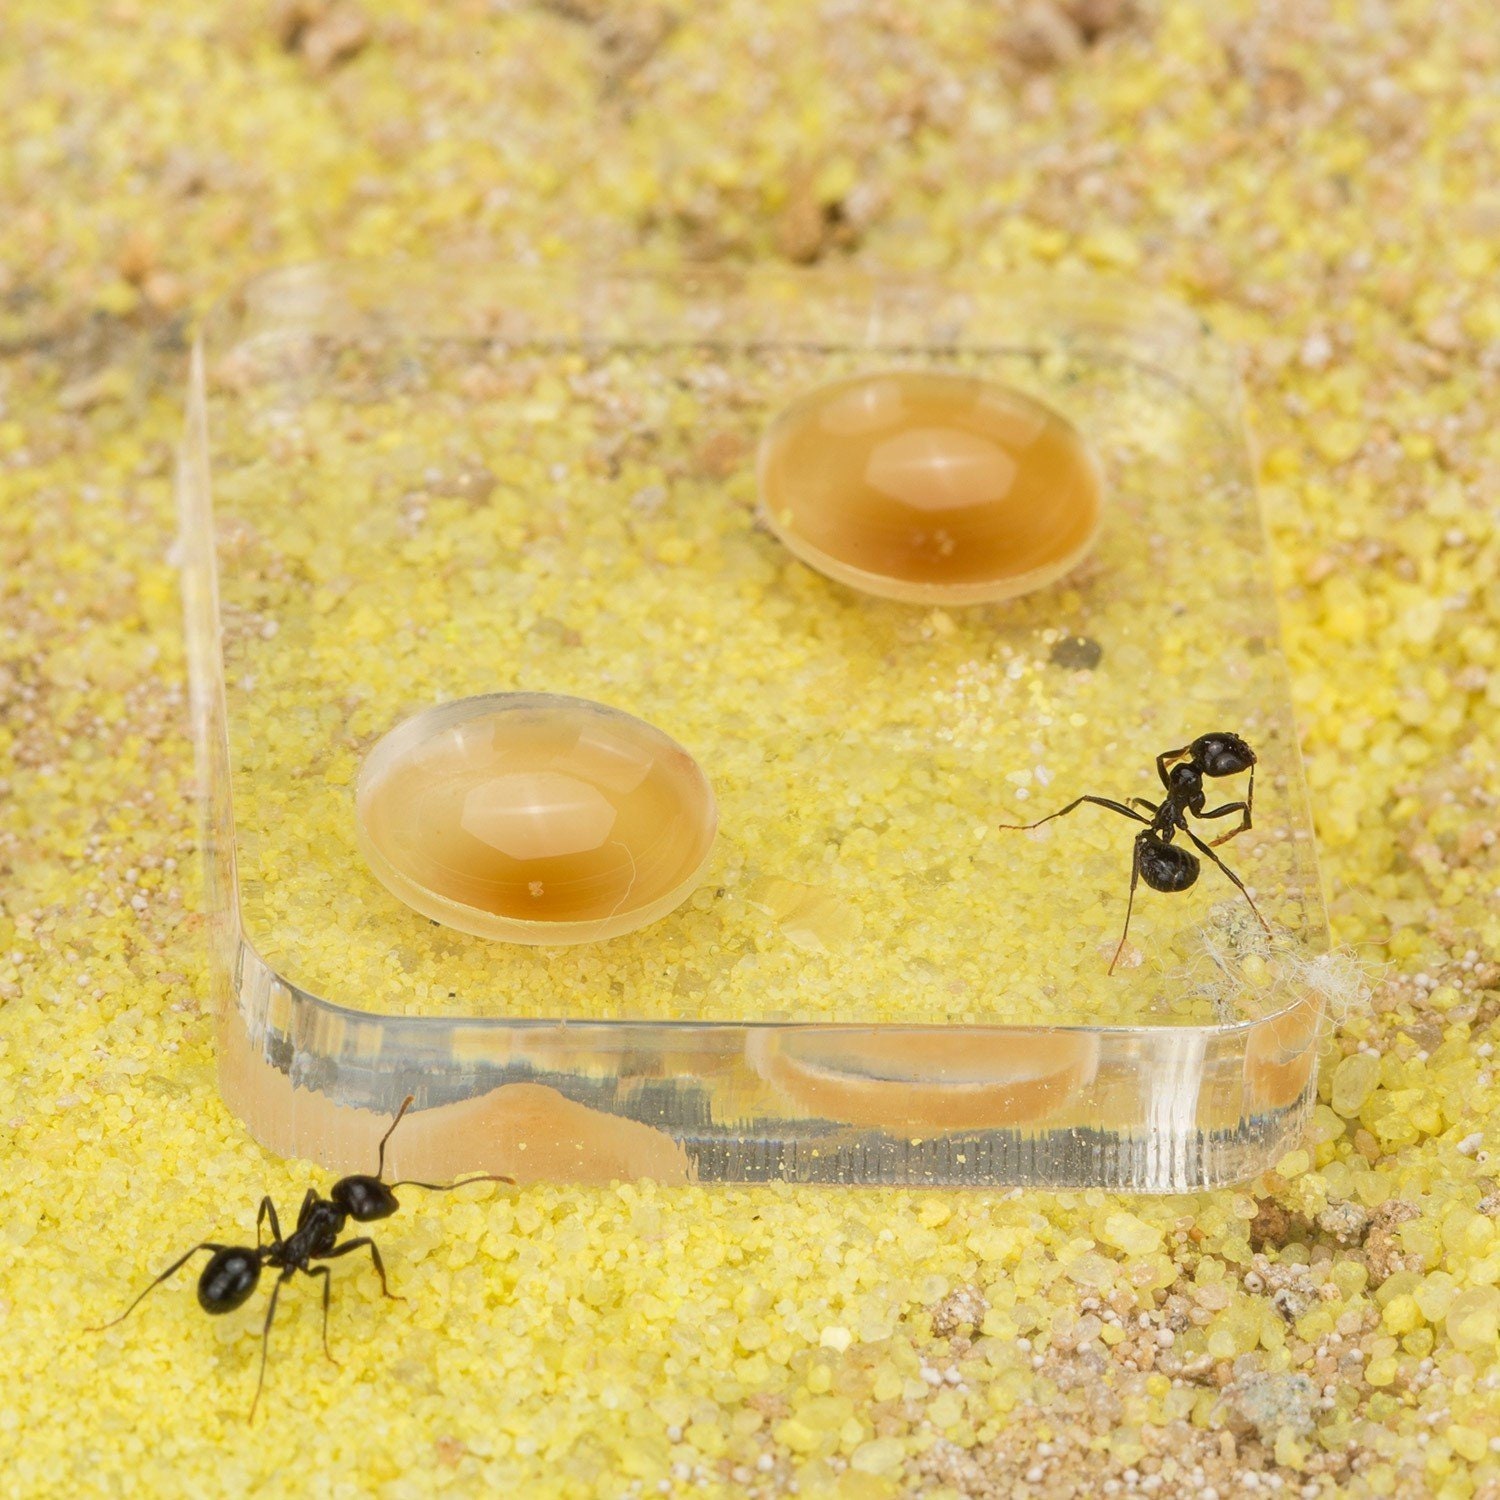 Liukouu Granja de Hormigas, Insecto Hormiguero Nido Granja alimentación  Caja formicario Educativo, hábitat para Hormigas vivas, ecosistema de